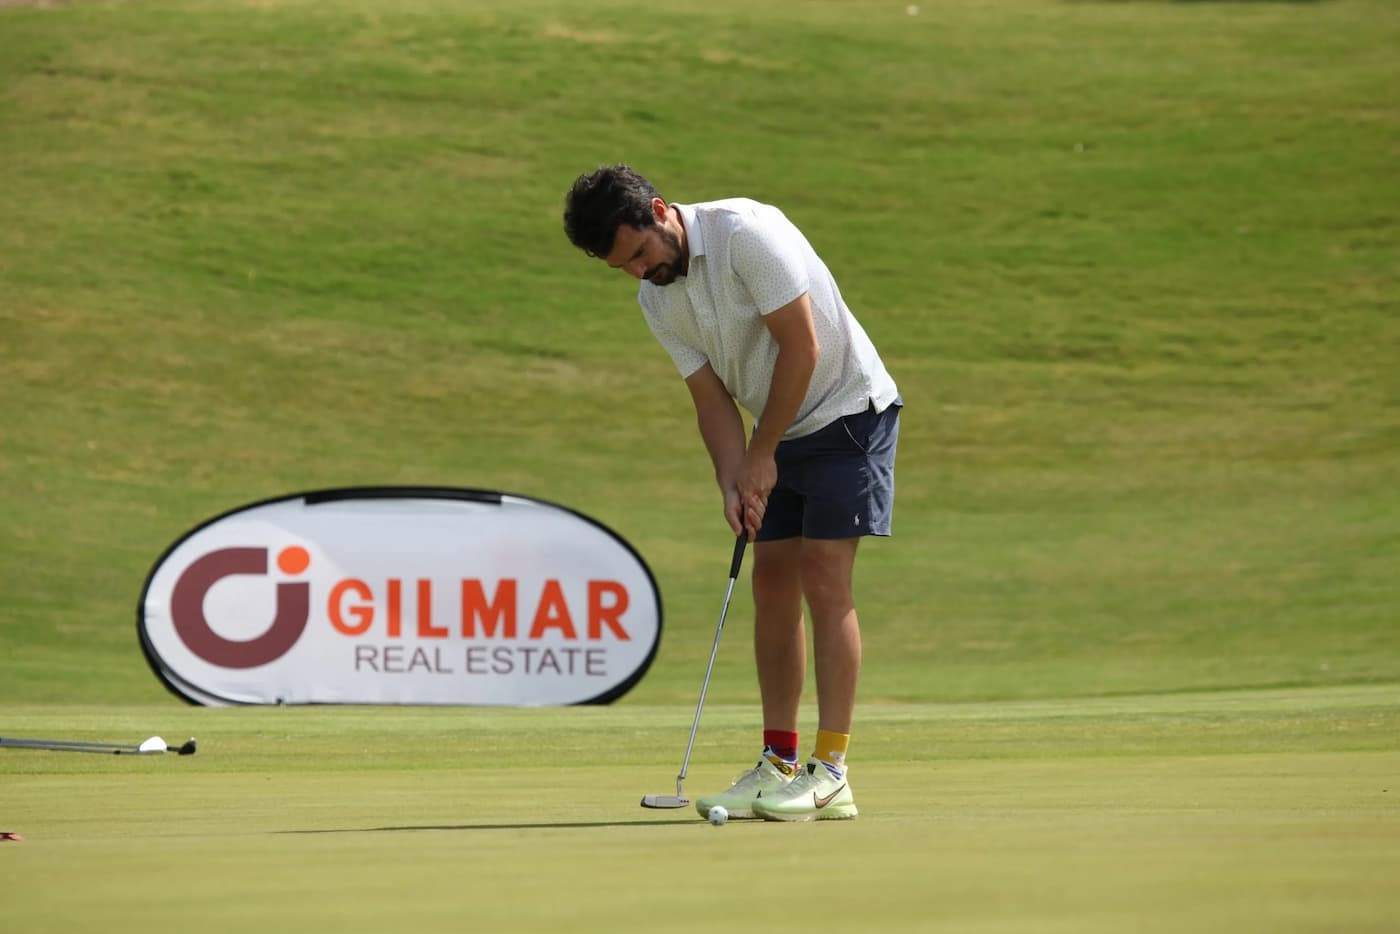 GILMAR repite patrocinio en el IX Circuito de Golf Sotogrande